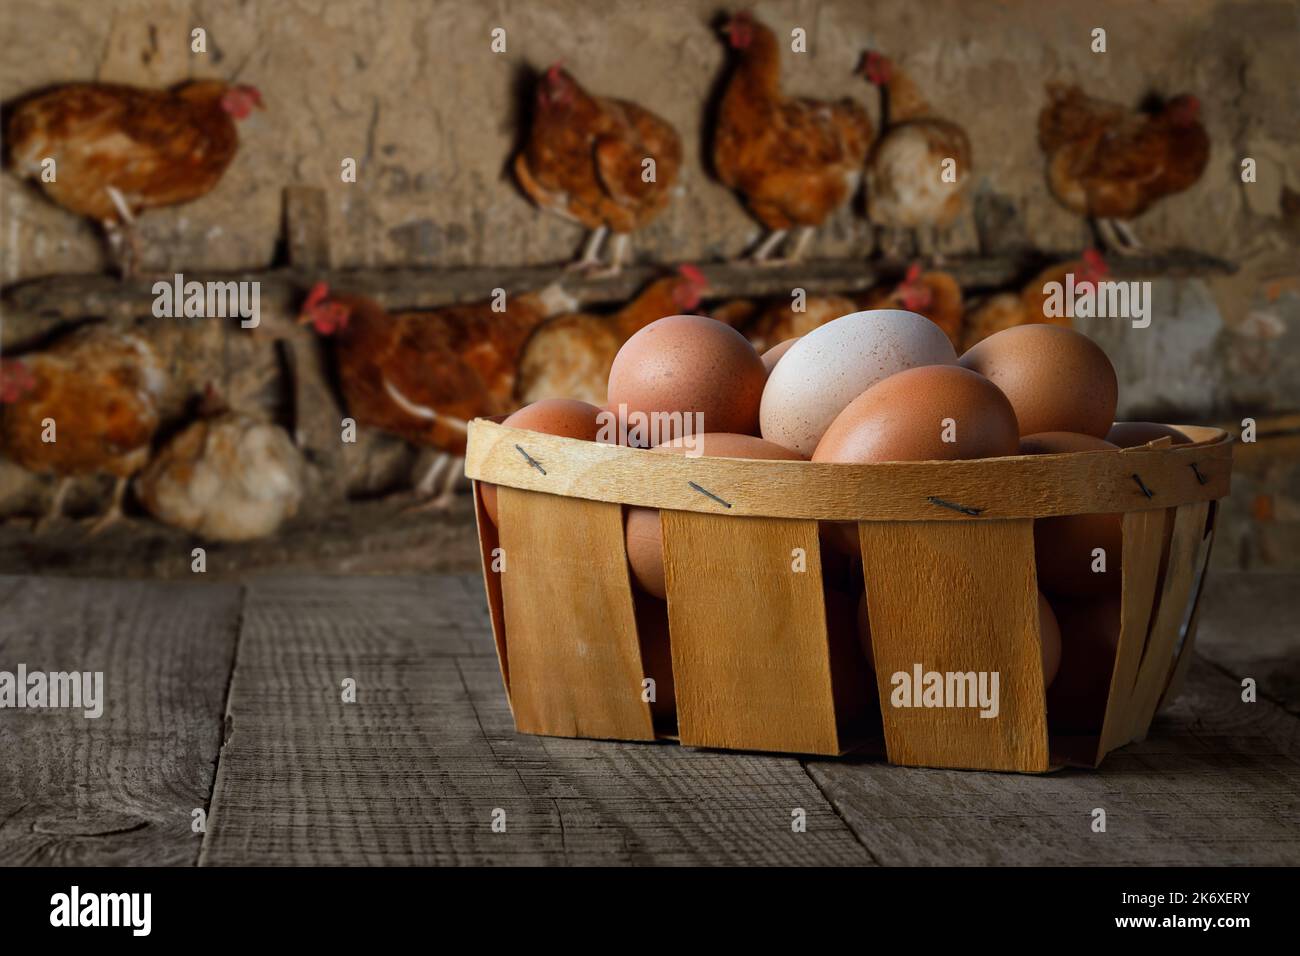 cestino pieno di uova di pollo sul tavolo con galline sul roost Foto Stock